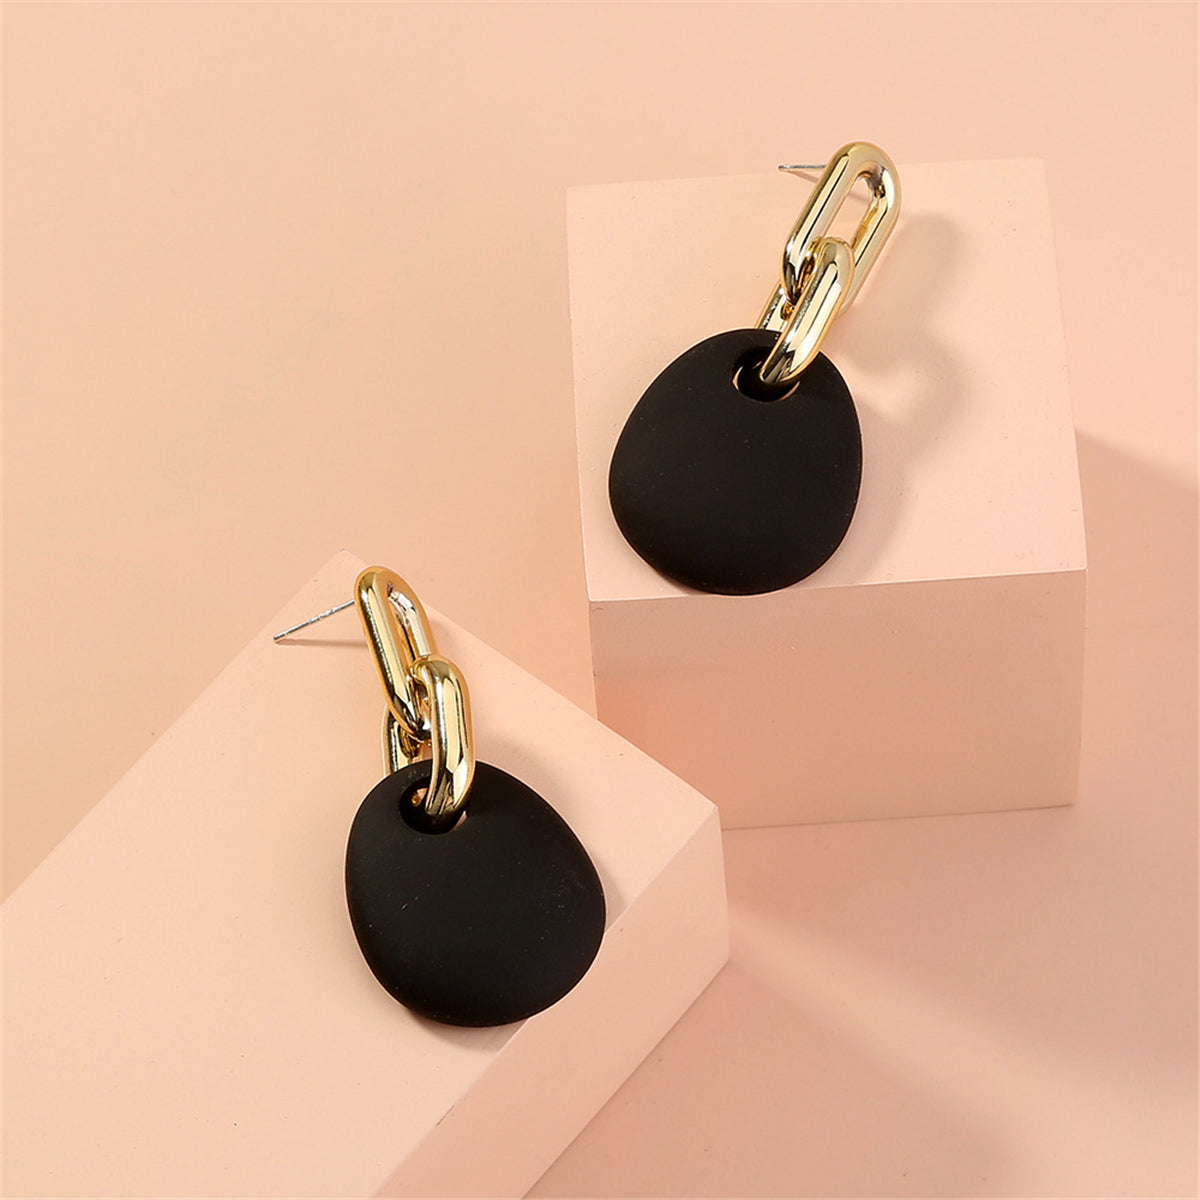 Black & 18K Gold-Plated Oval Drop Earrings